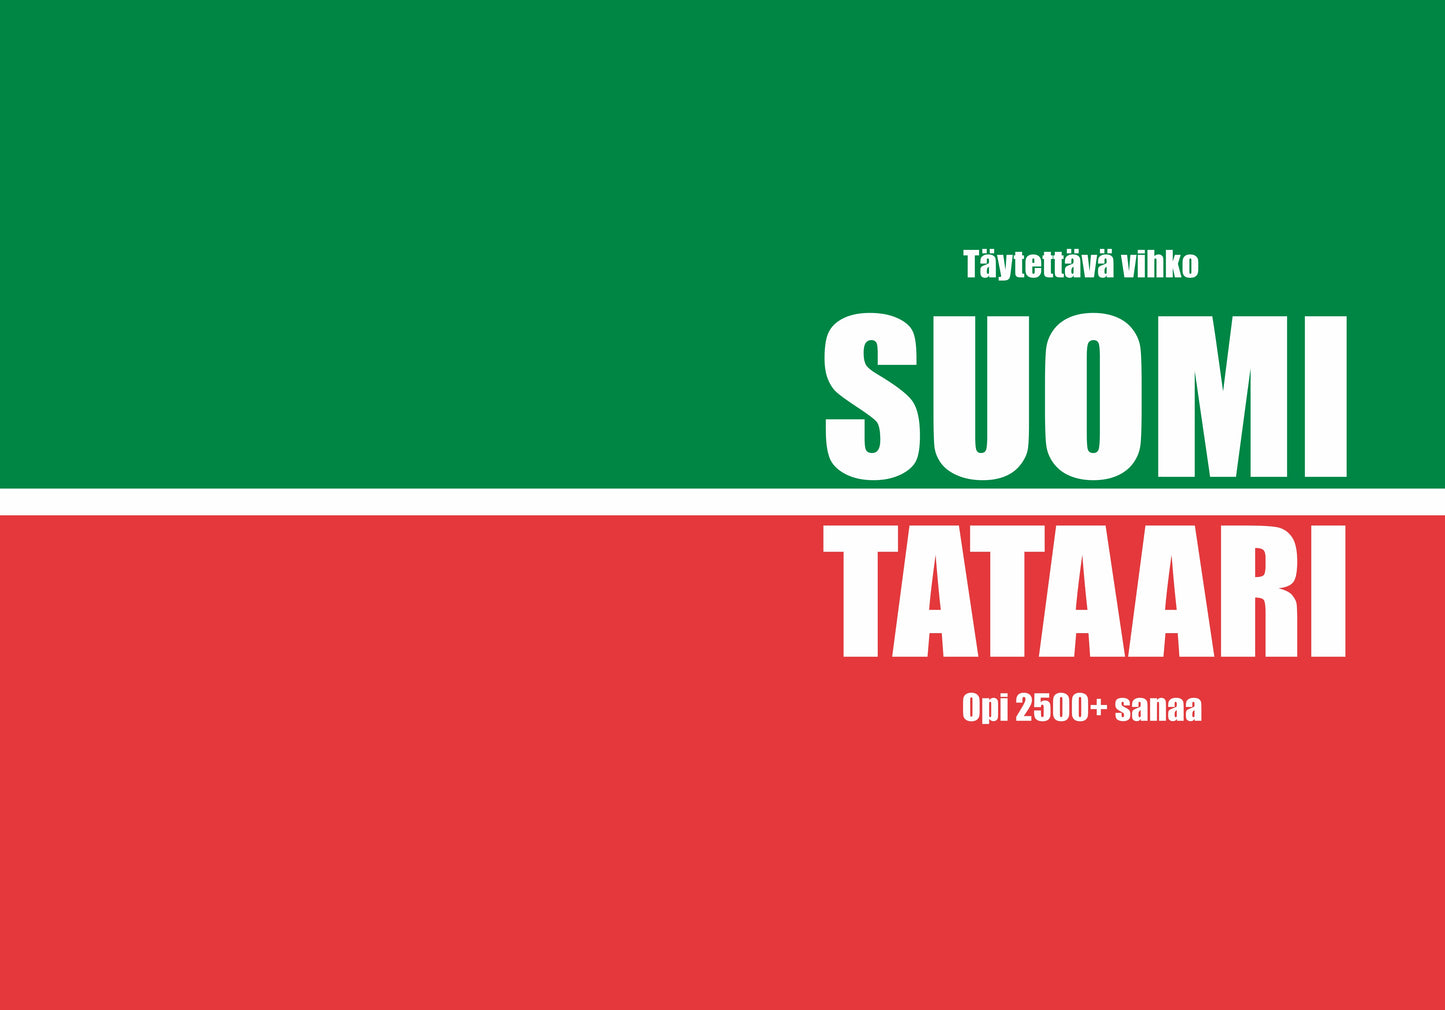 Suomi-tataari täytettävä vihko